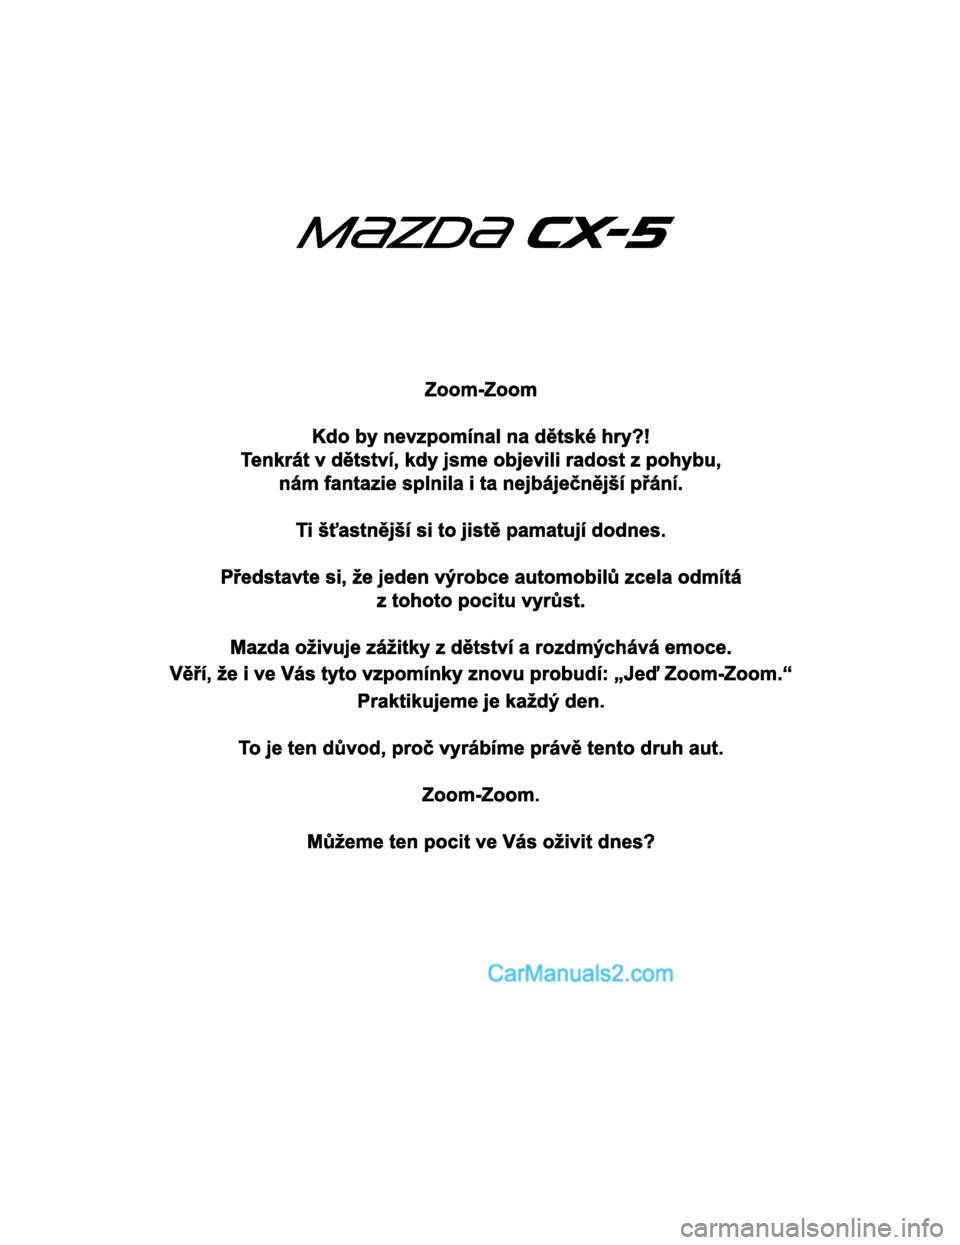 MAZDA MODEL CX-5 2017  Návod k obsluze (in Czech) 2017-7-18 12:05:07Form No. CX-5 8FY4-EE-17E-CZ+L_Edition1.pdf  